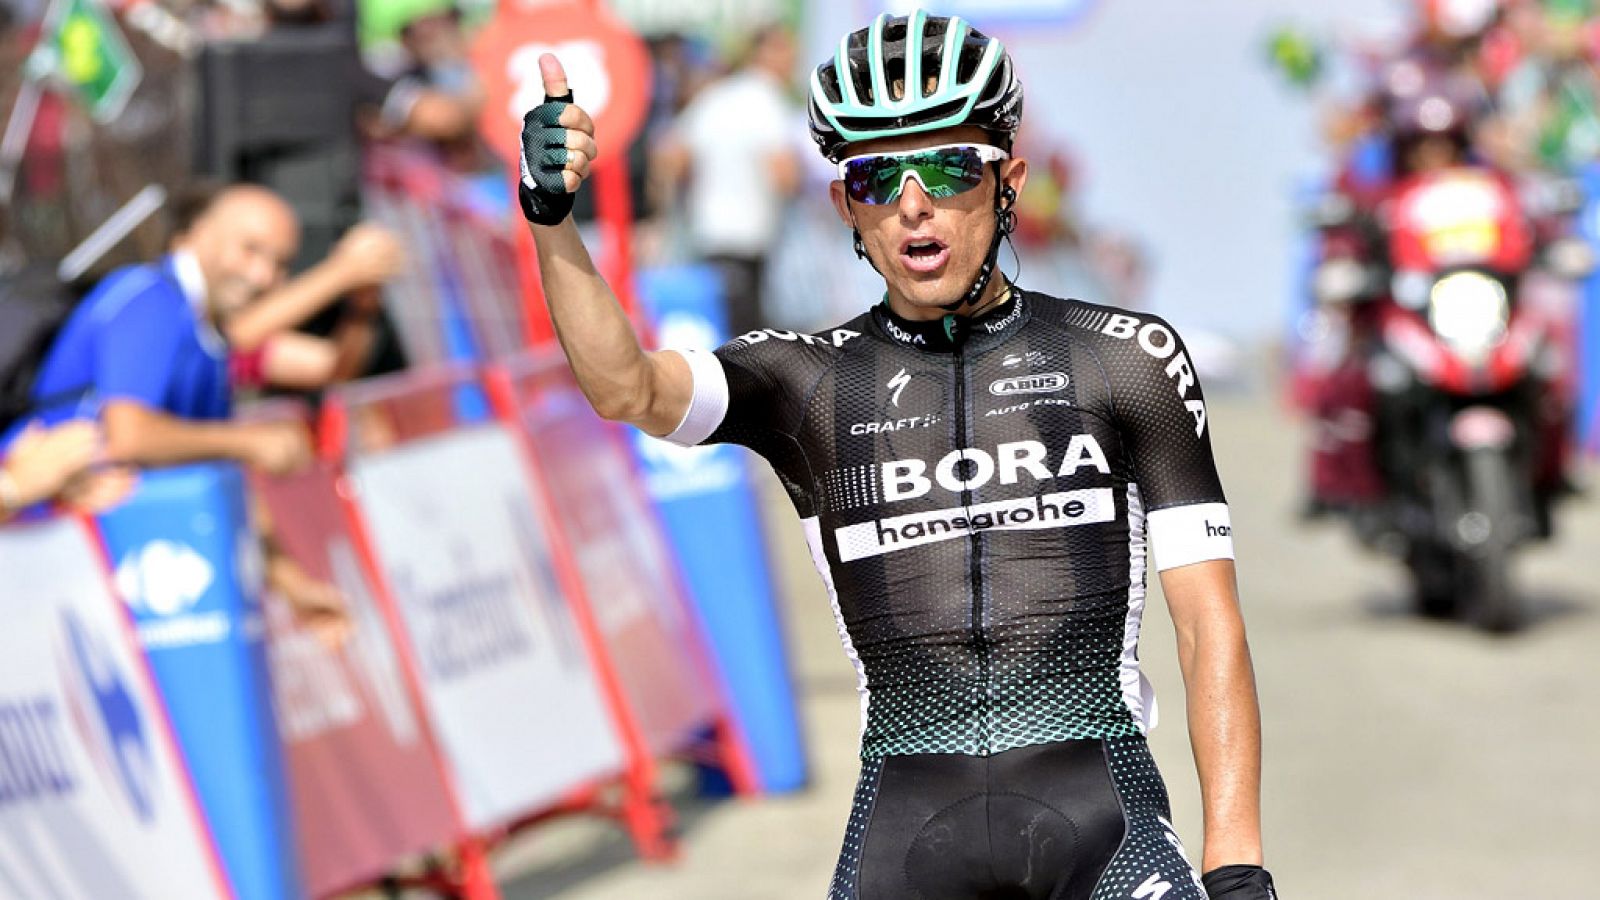 El polaco Rafal Majka (Bora-Hansgrohe) se impuso en la decimocuarta etapa de la Vuelta a España, entre Écija y La Pandera, de 175 kilómetros, en la que el británico Chris Froome (Sky) mantuvo el jersey rojo de líder.